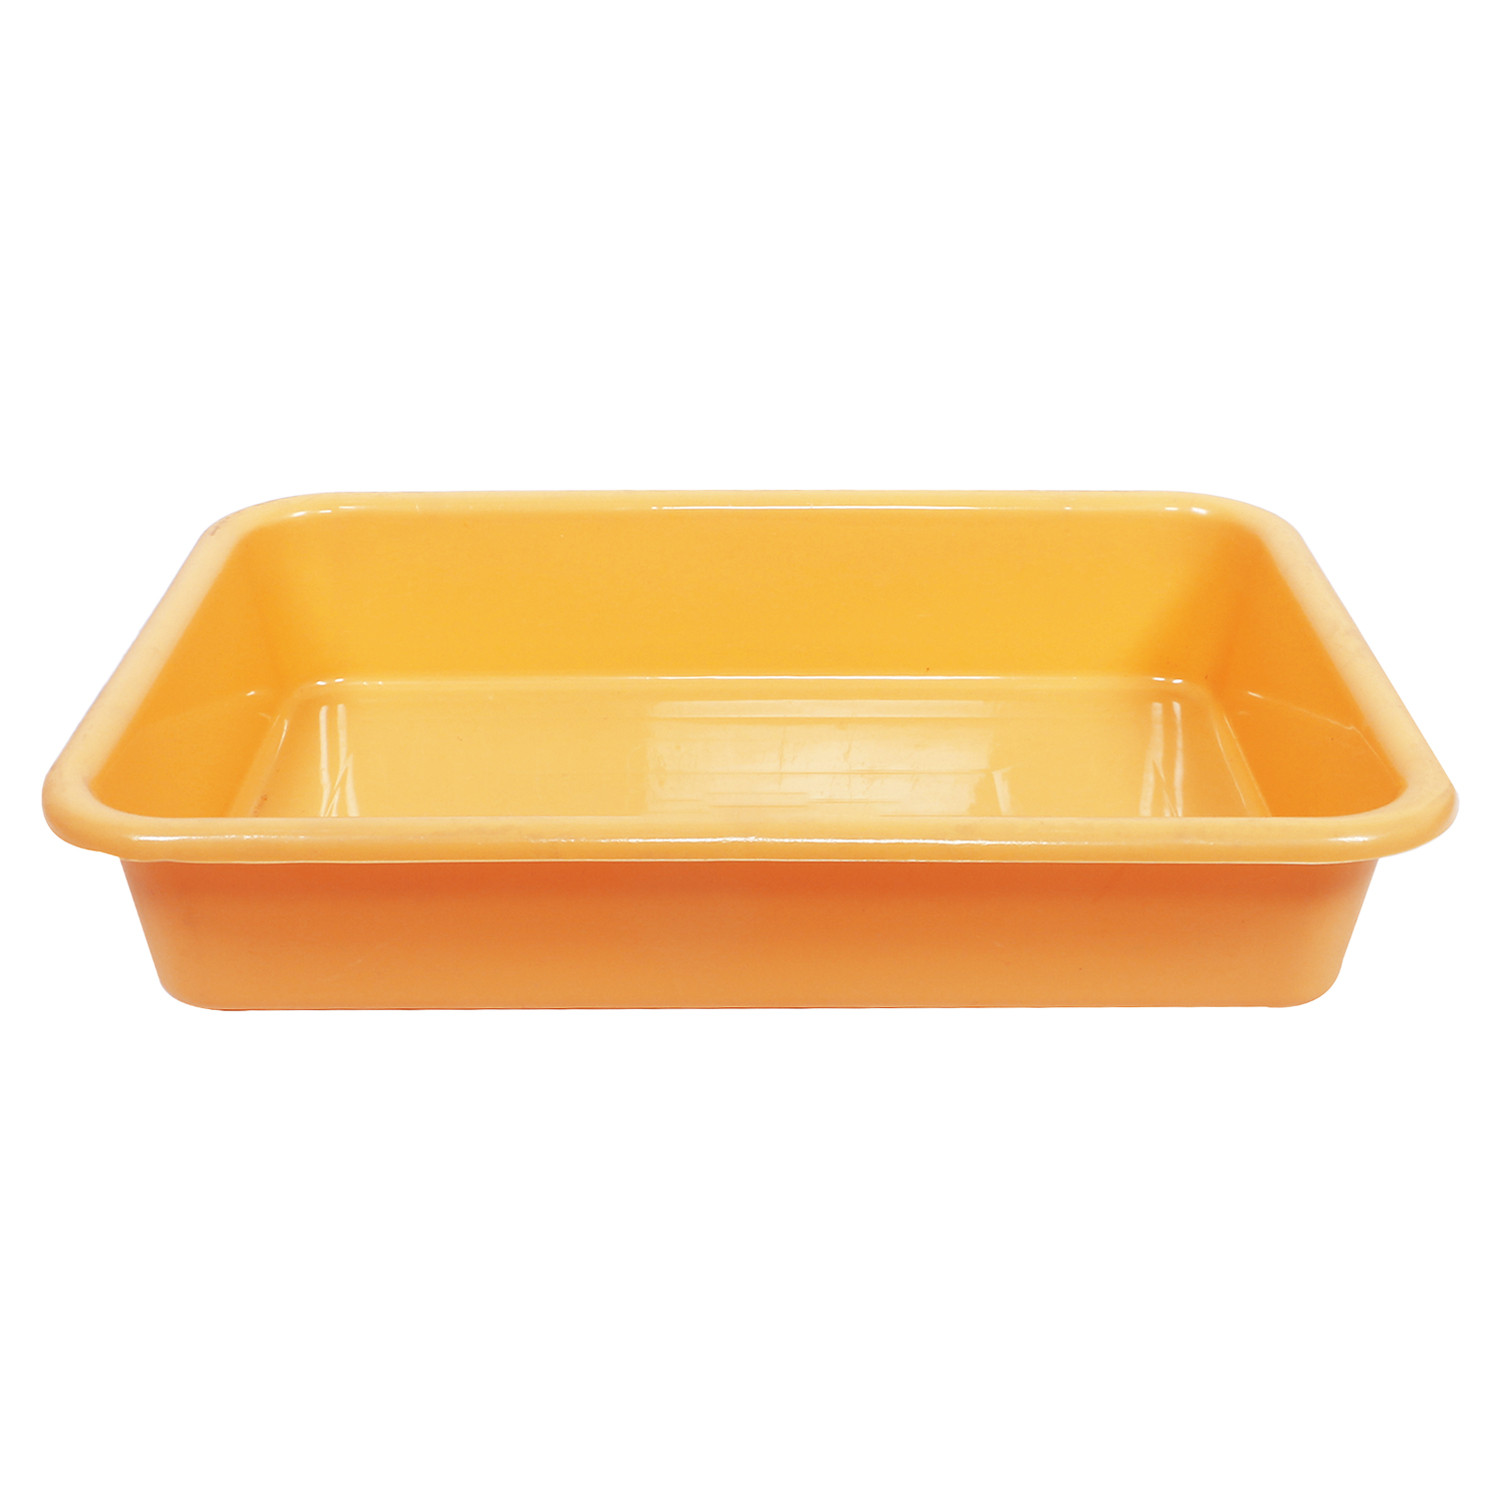 Kuber Industries Storage Tray|Versatile Plastic Storage Organizer|Rectangular Tray for Kitchen Storage|Storage Tray for office|Exel Tray 555 (Yellow)